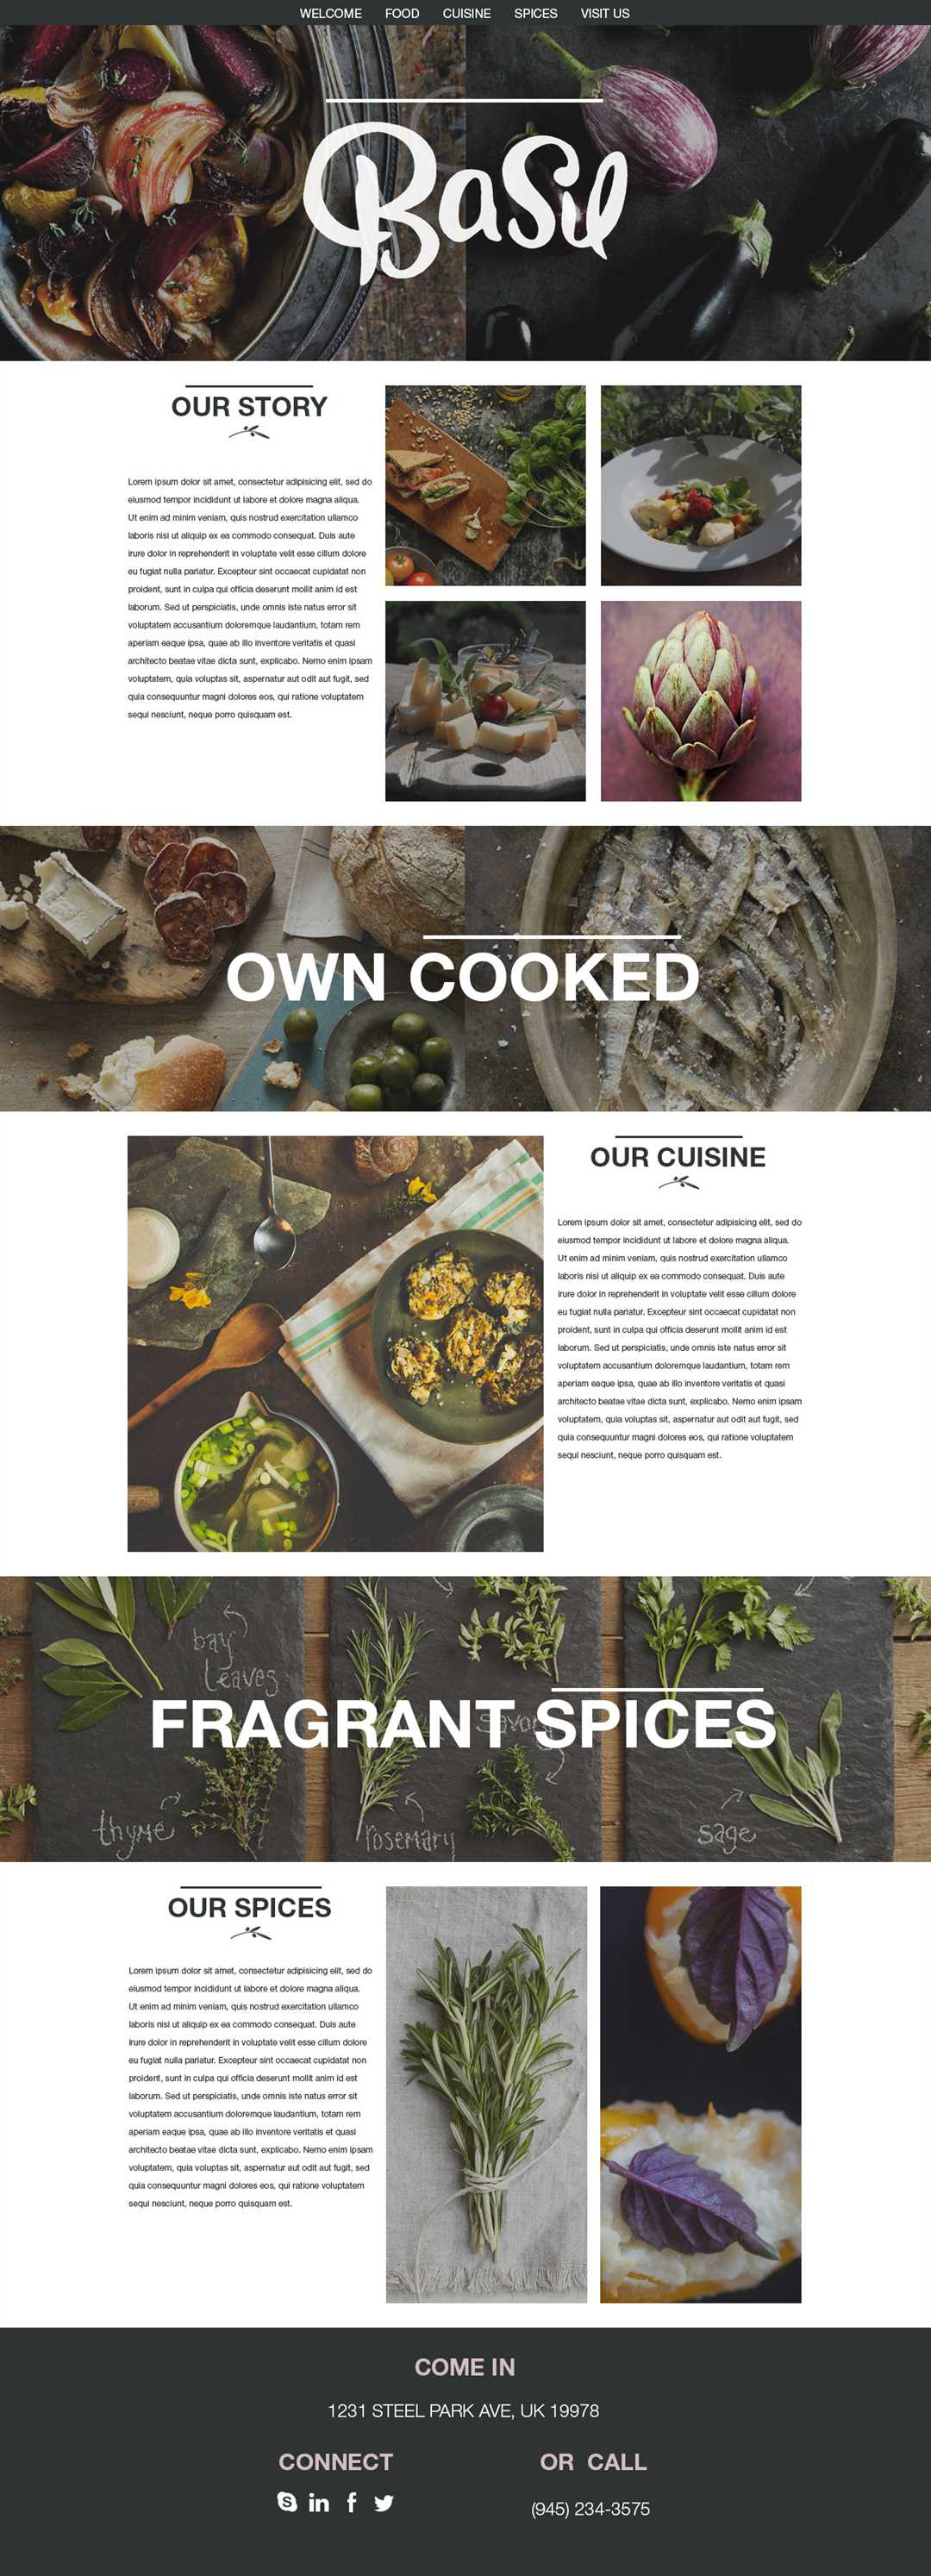 Примеры кулинарных сайтов